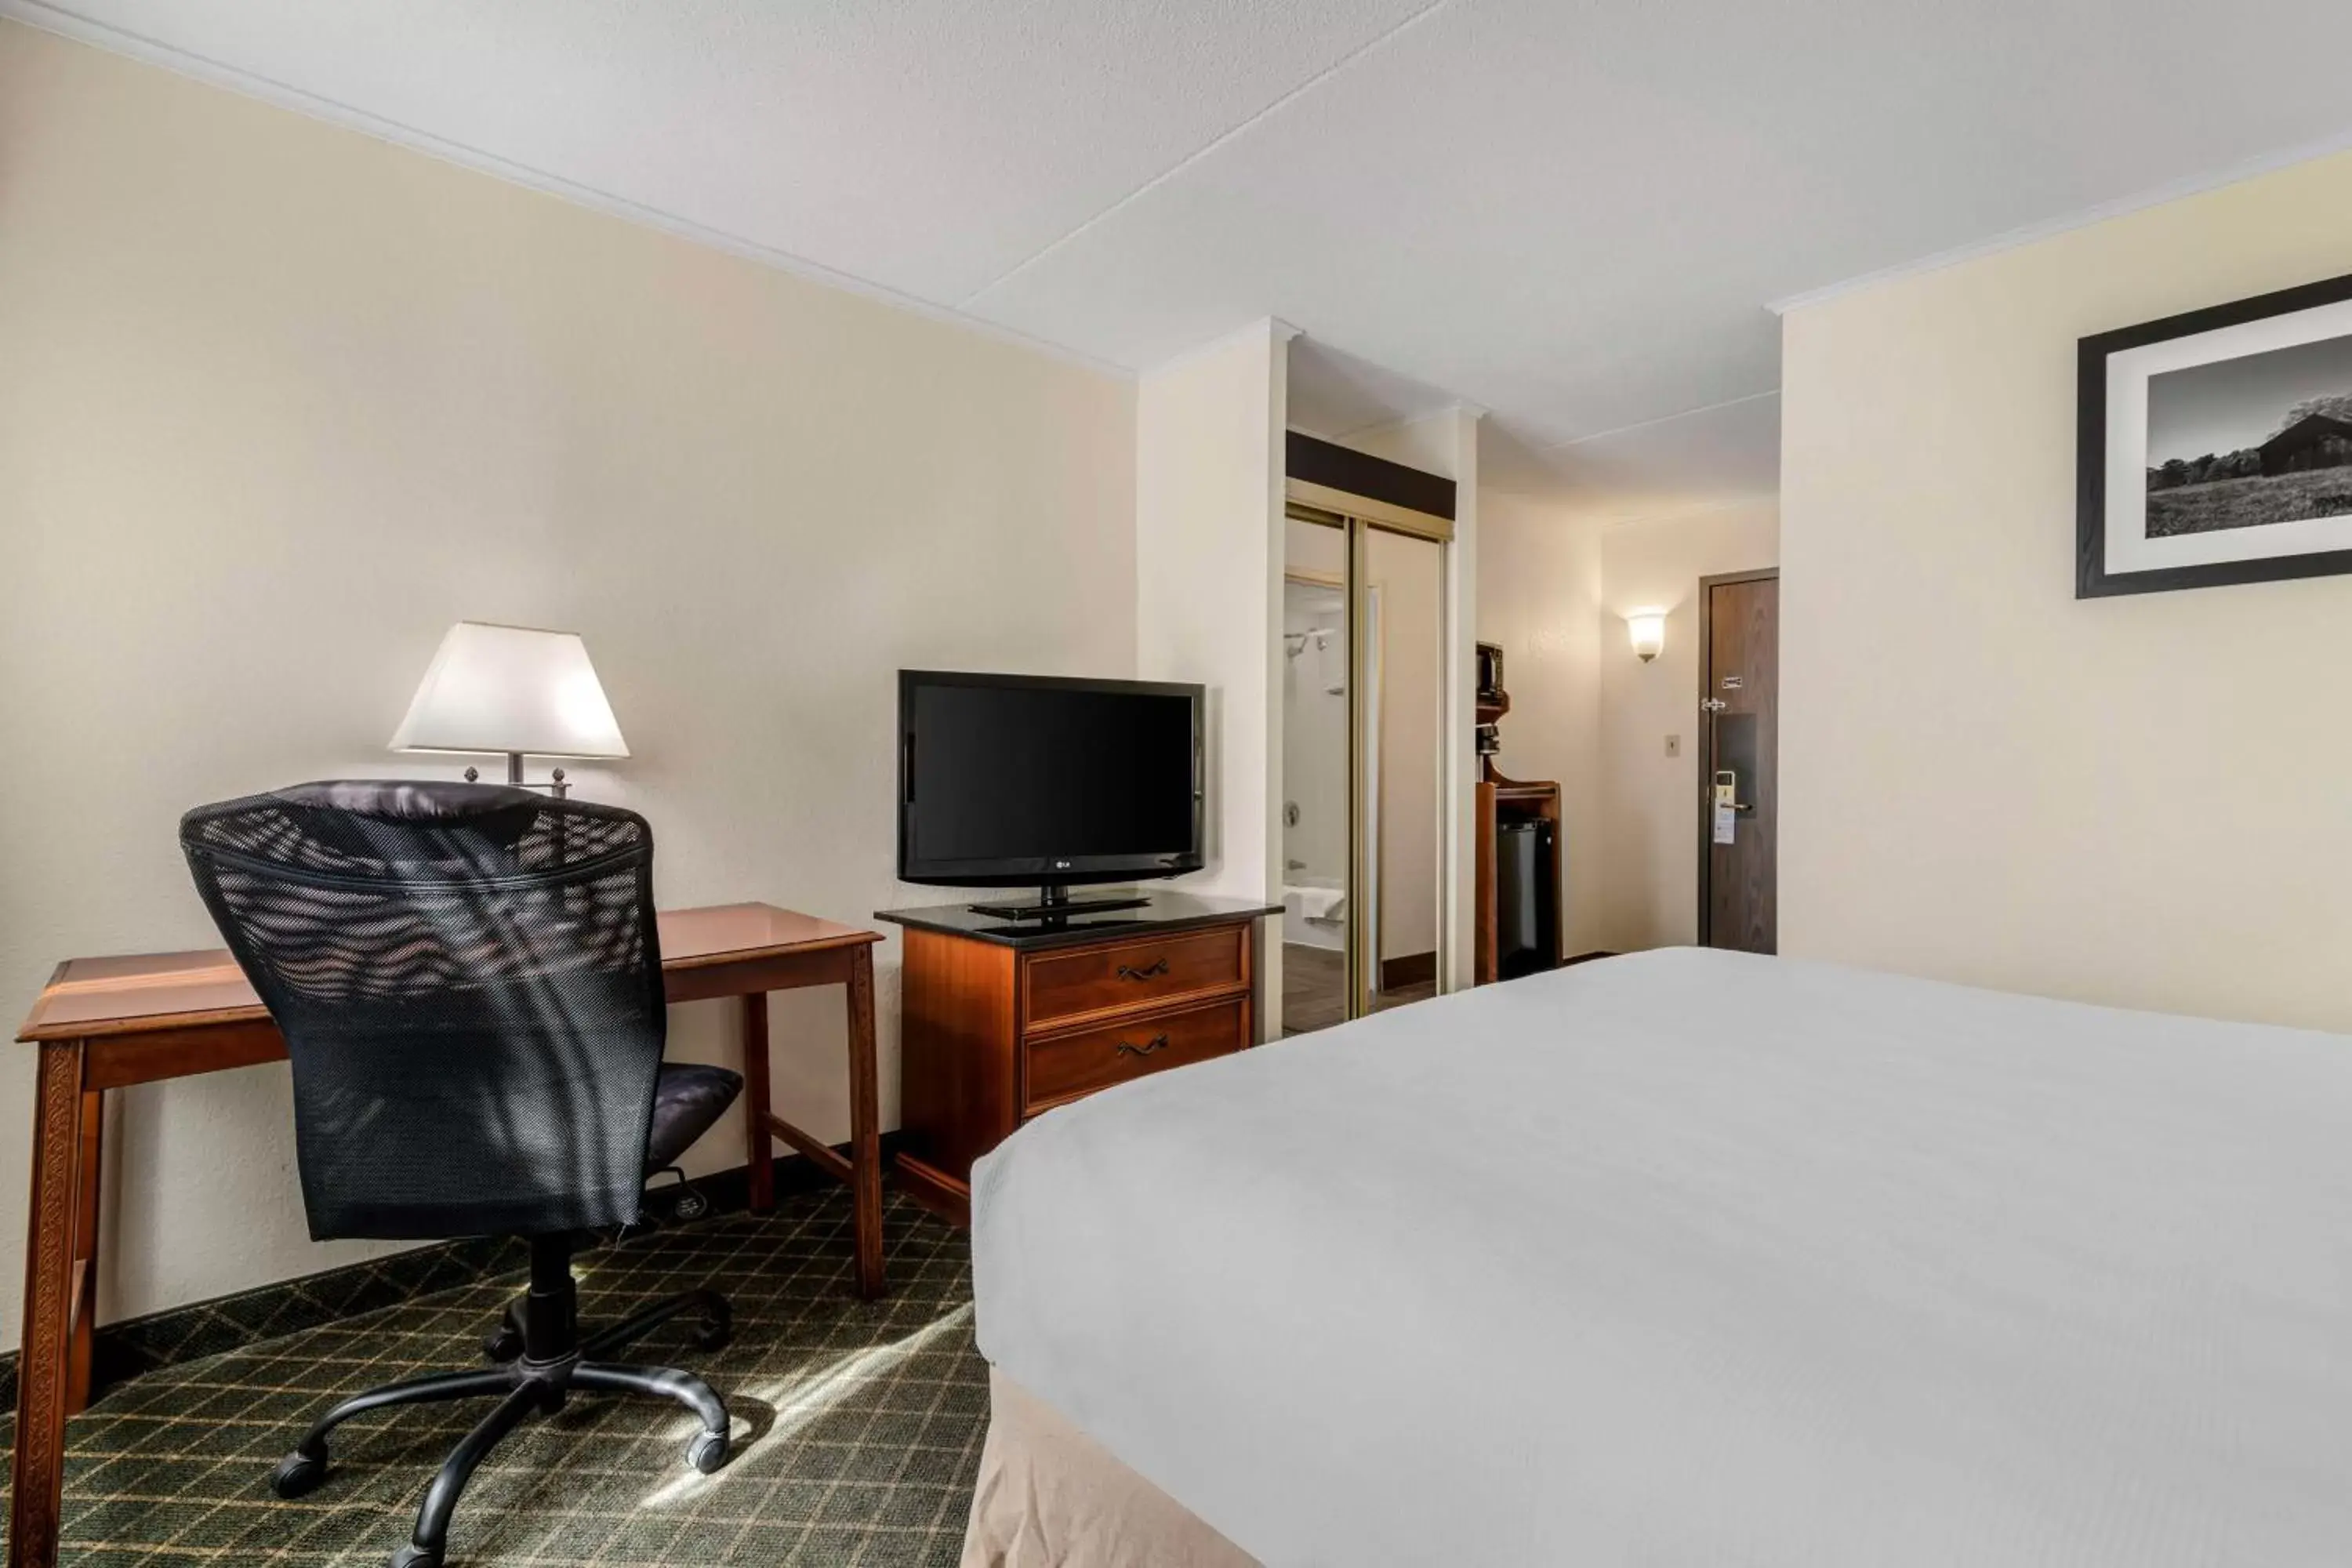 Bedroom, TV/Entertainment Center in Best Western Plus Augusta Civic Center Inn